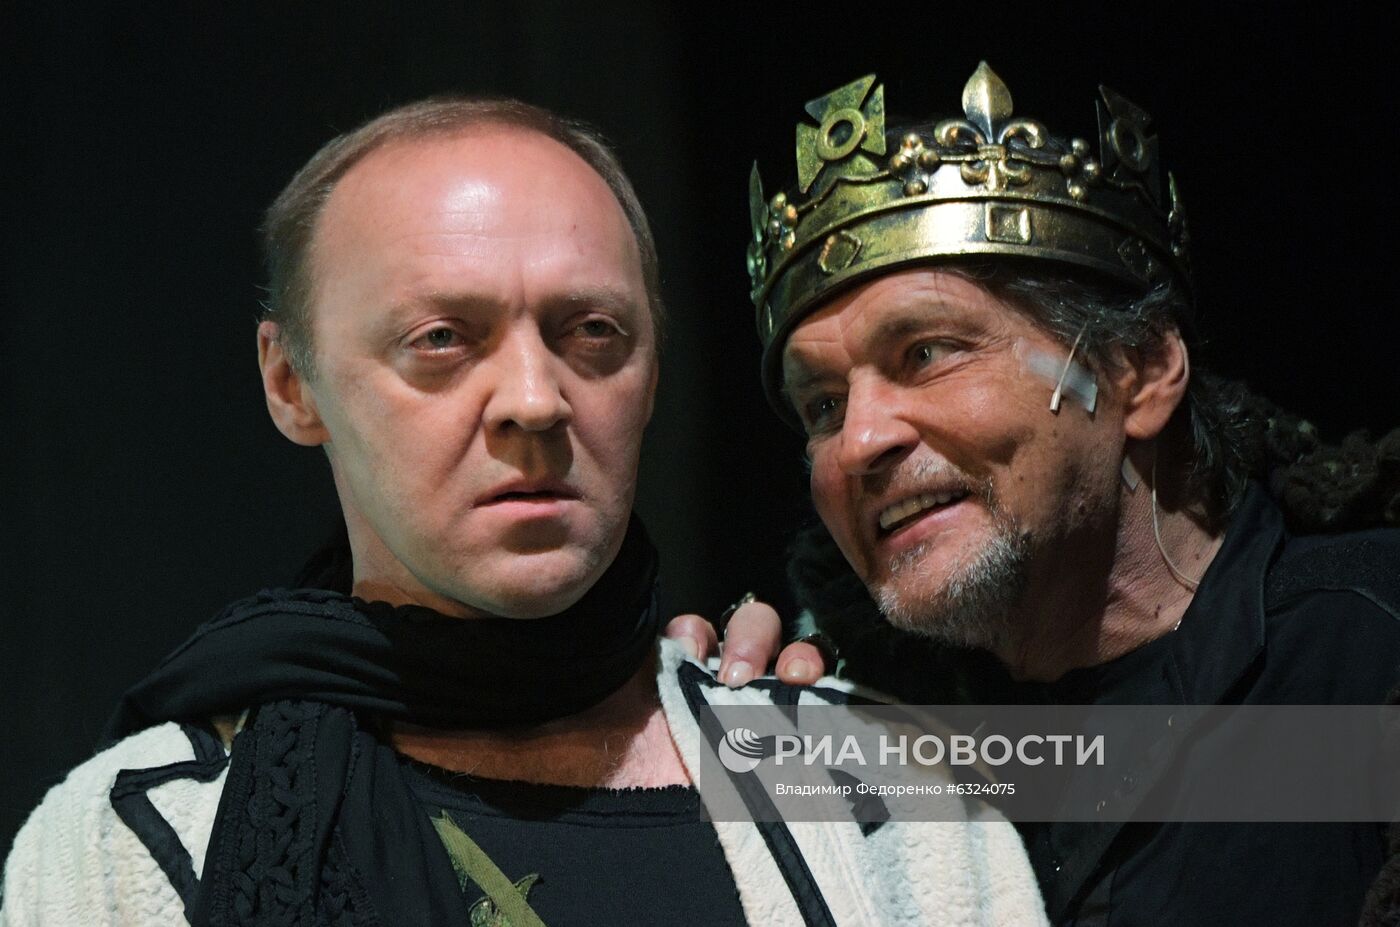 Спектакль "Ричард III" в Театре имени Моссовета